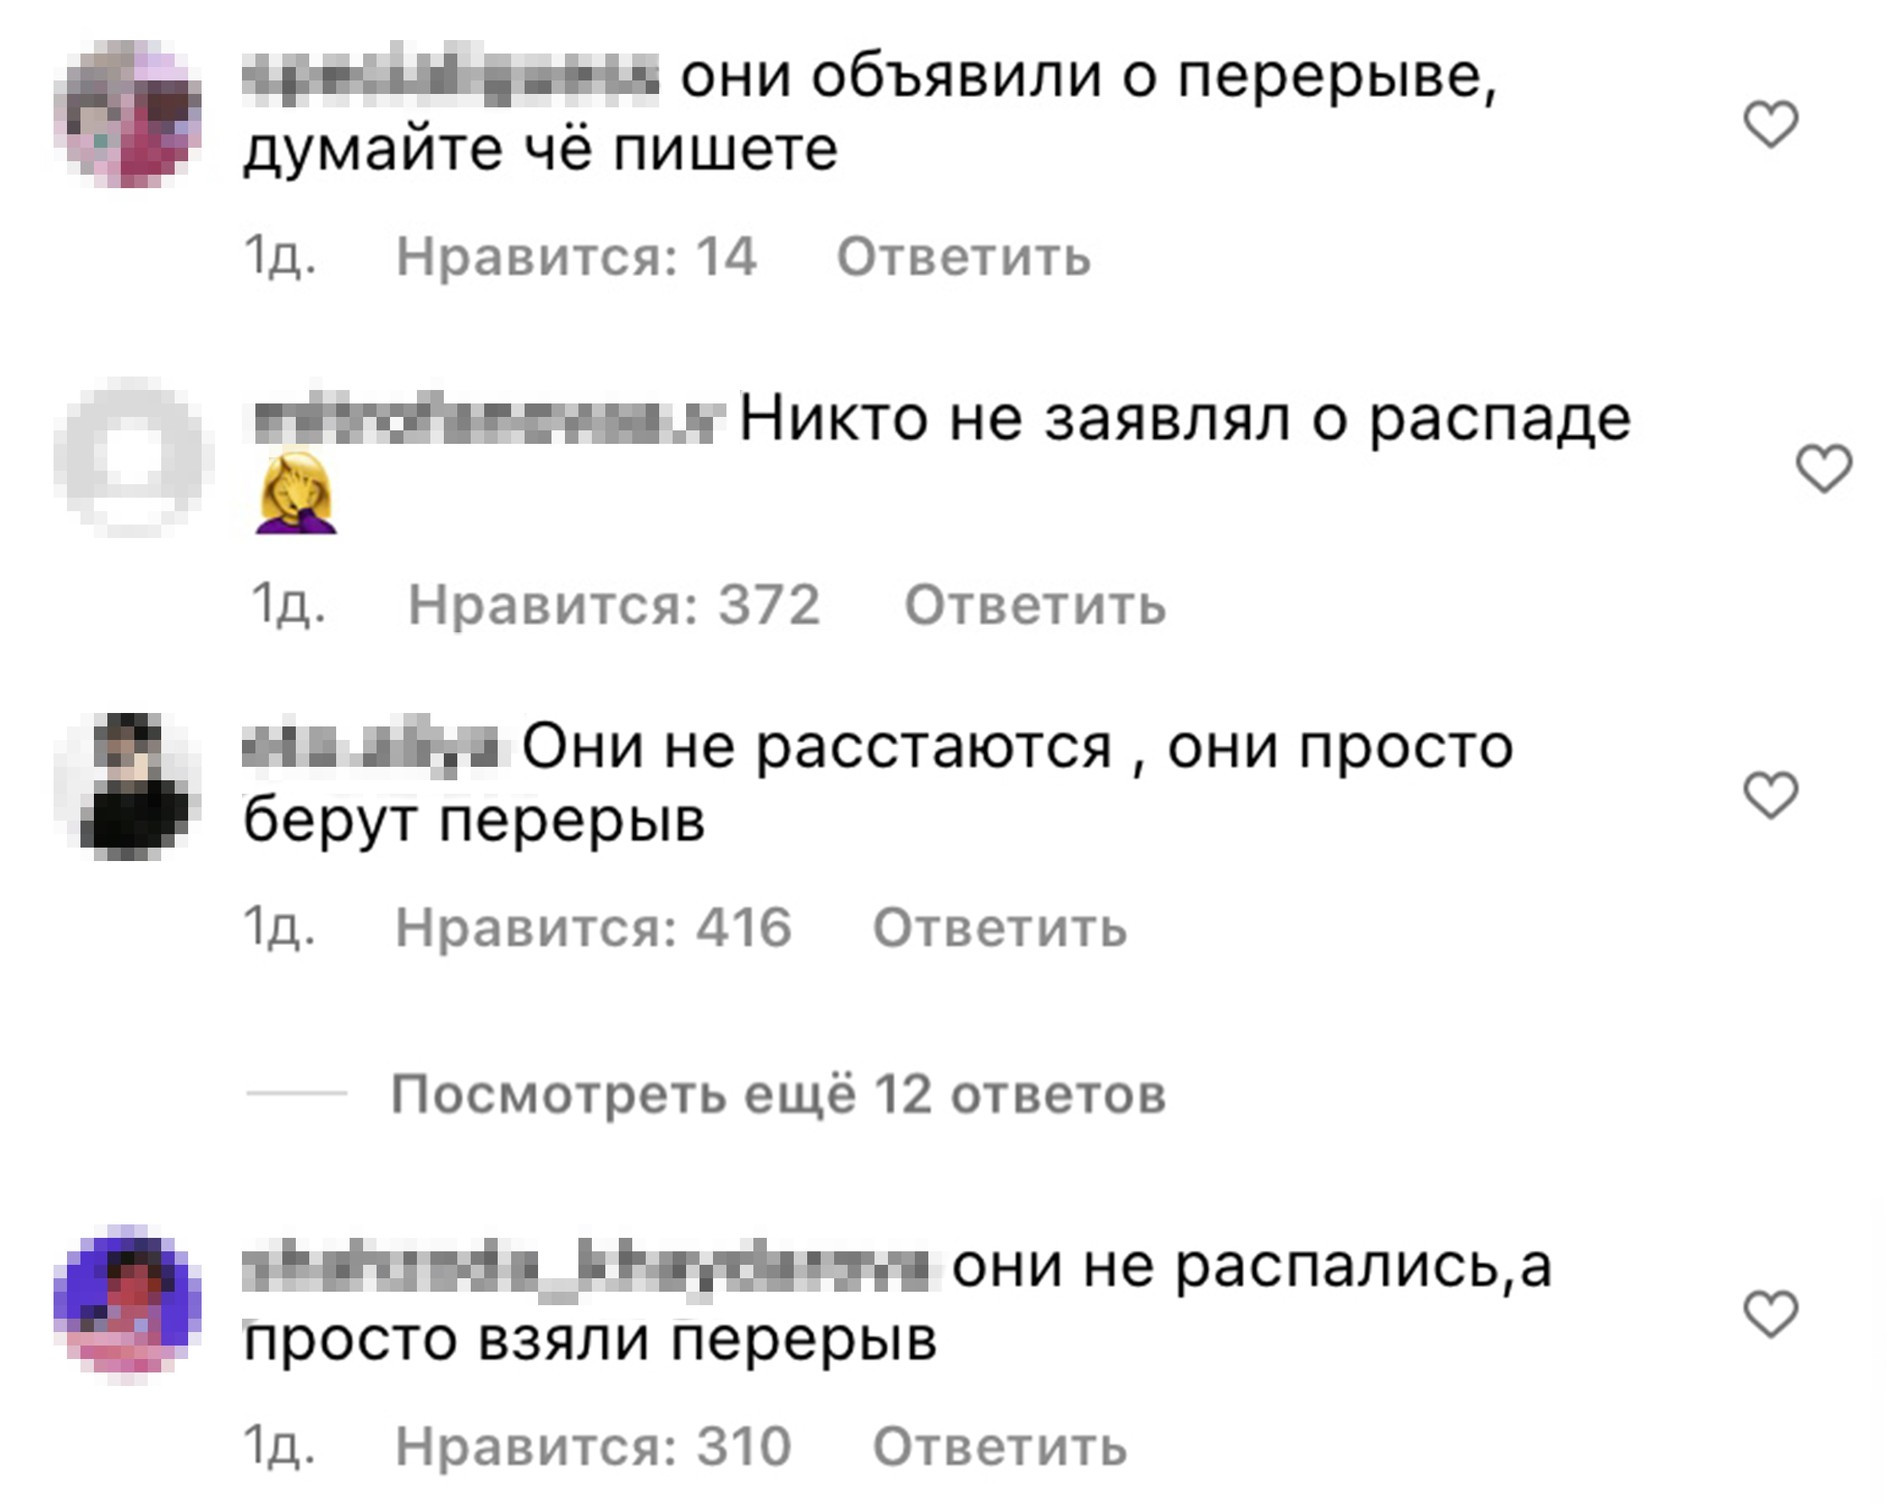 Комментарии под новостью о распаде группы 
Источник: Instagram (запрещен в РФ) 